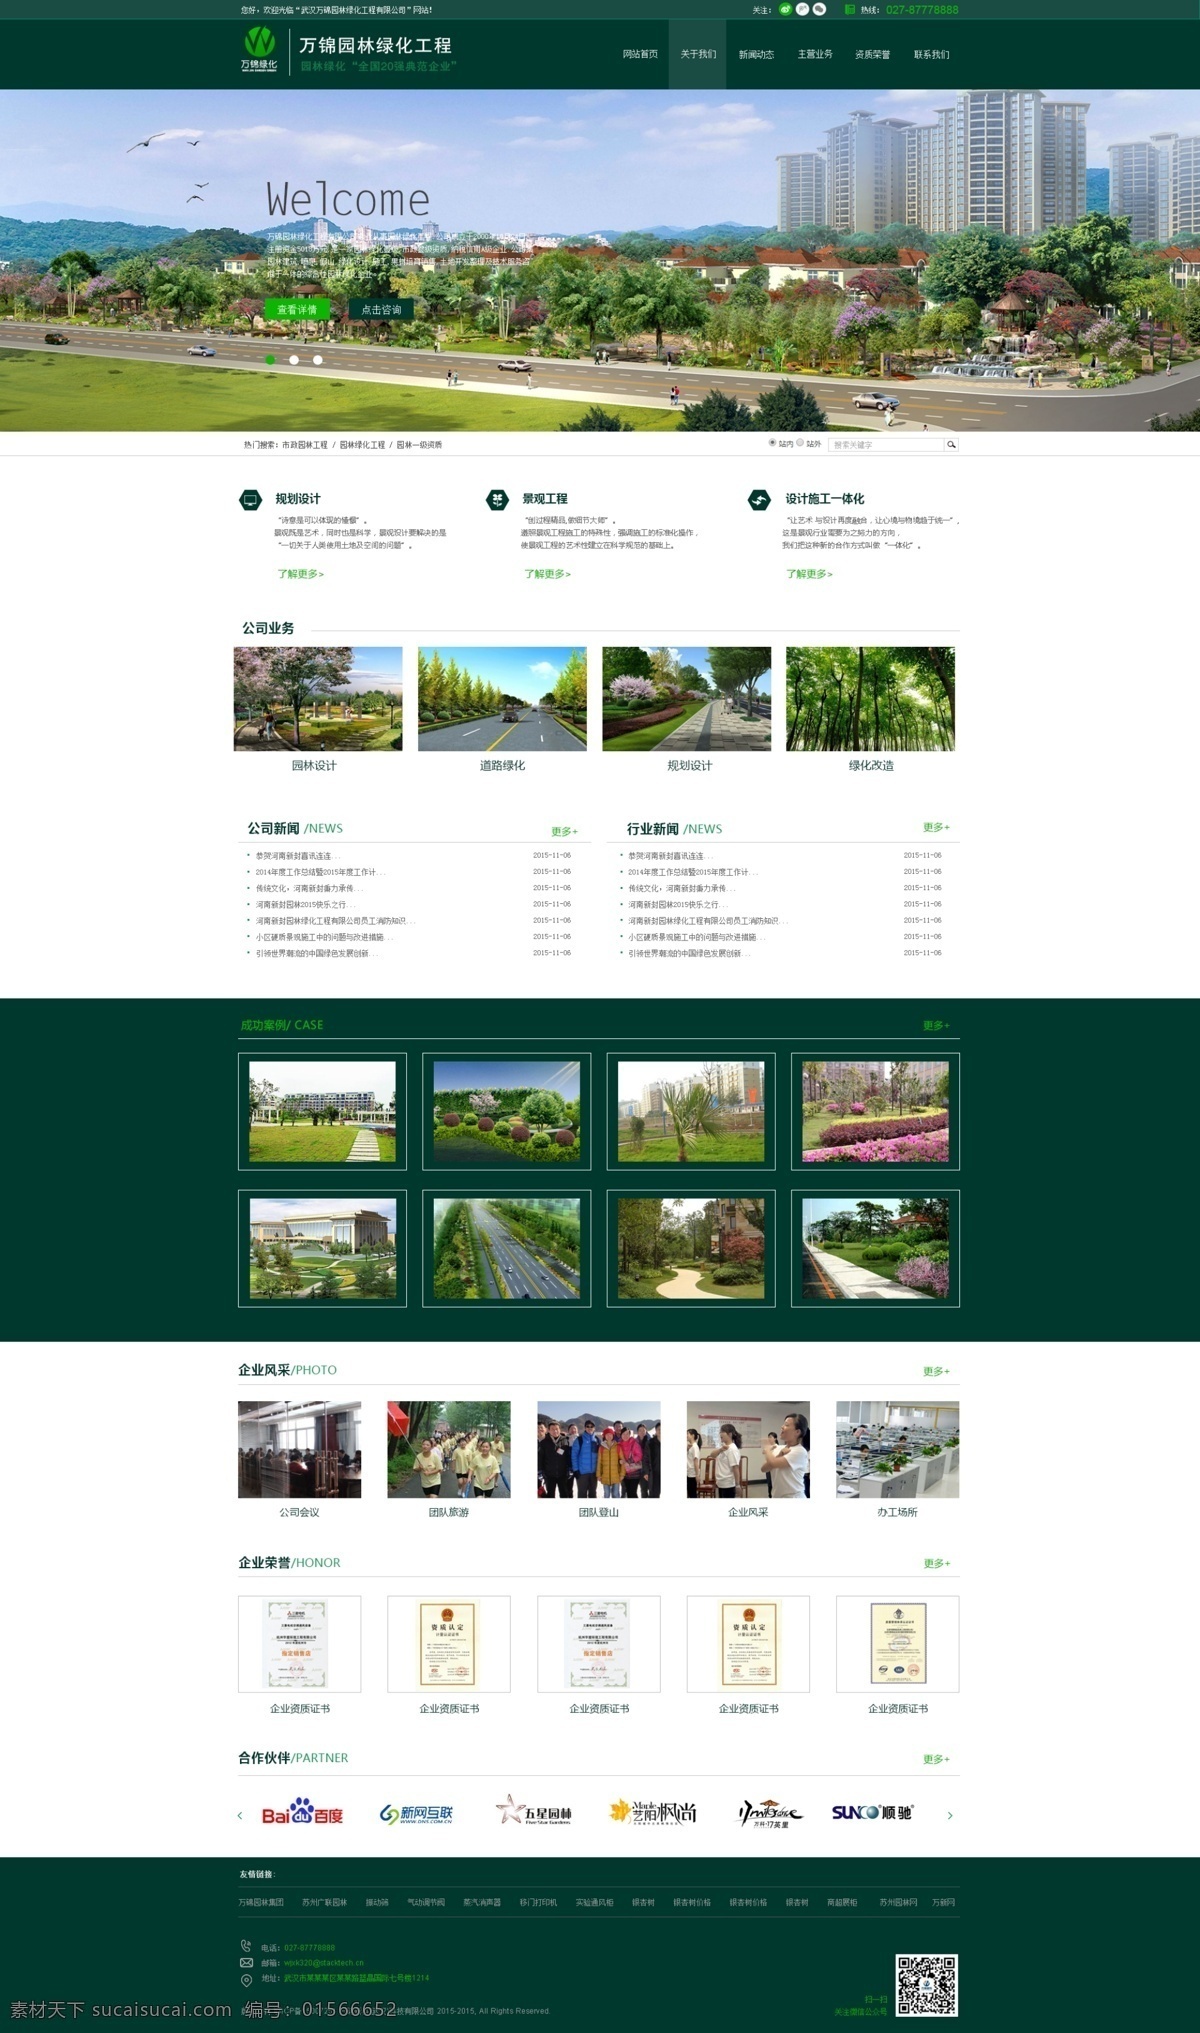 原创 绿化 网页设计 景观 园林绿化 绿化网站 景观网站 园林 绿地 微信 新浪微博 腾讯微博图标 白色